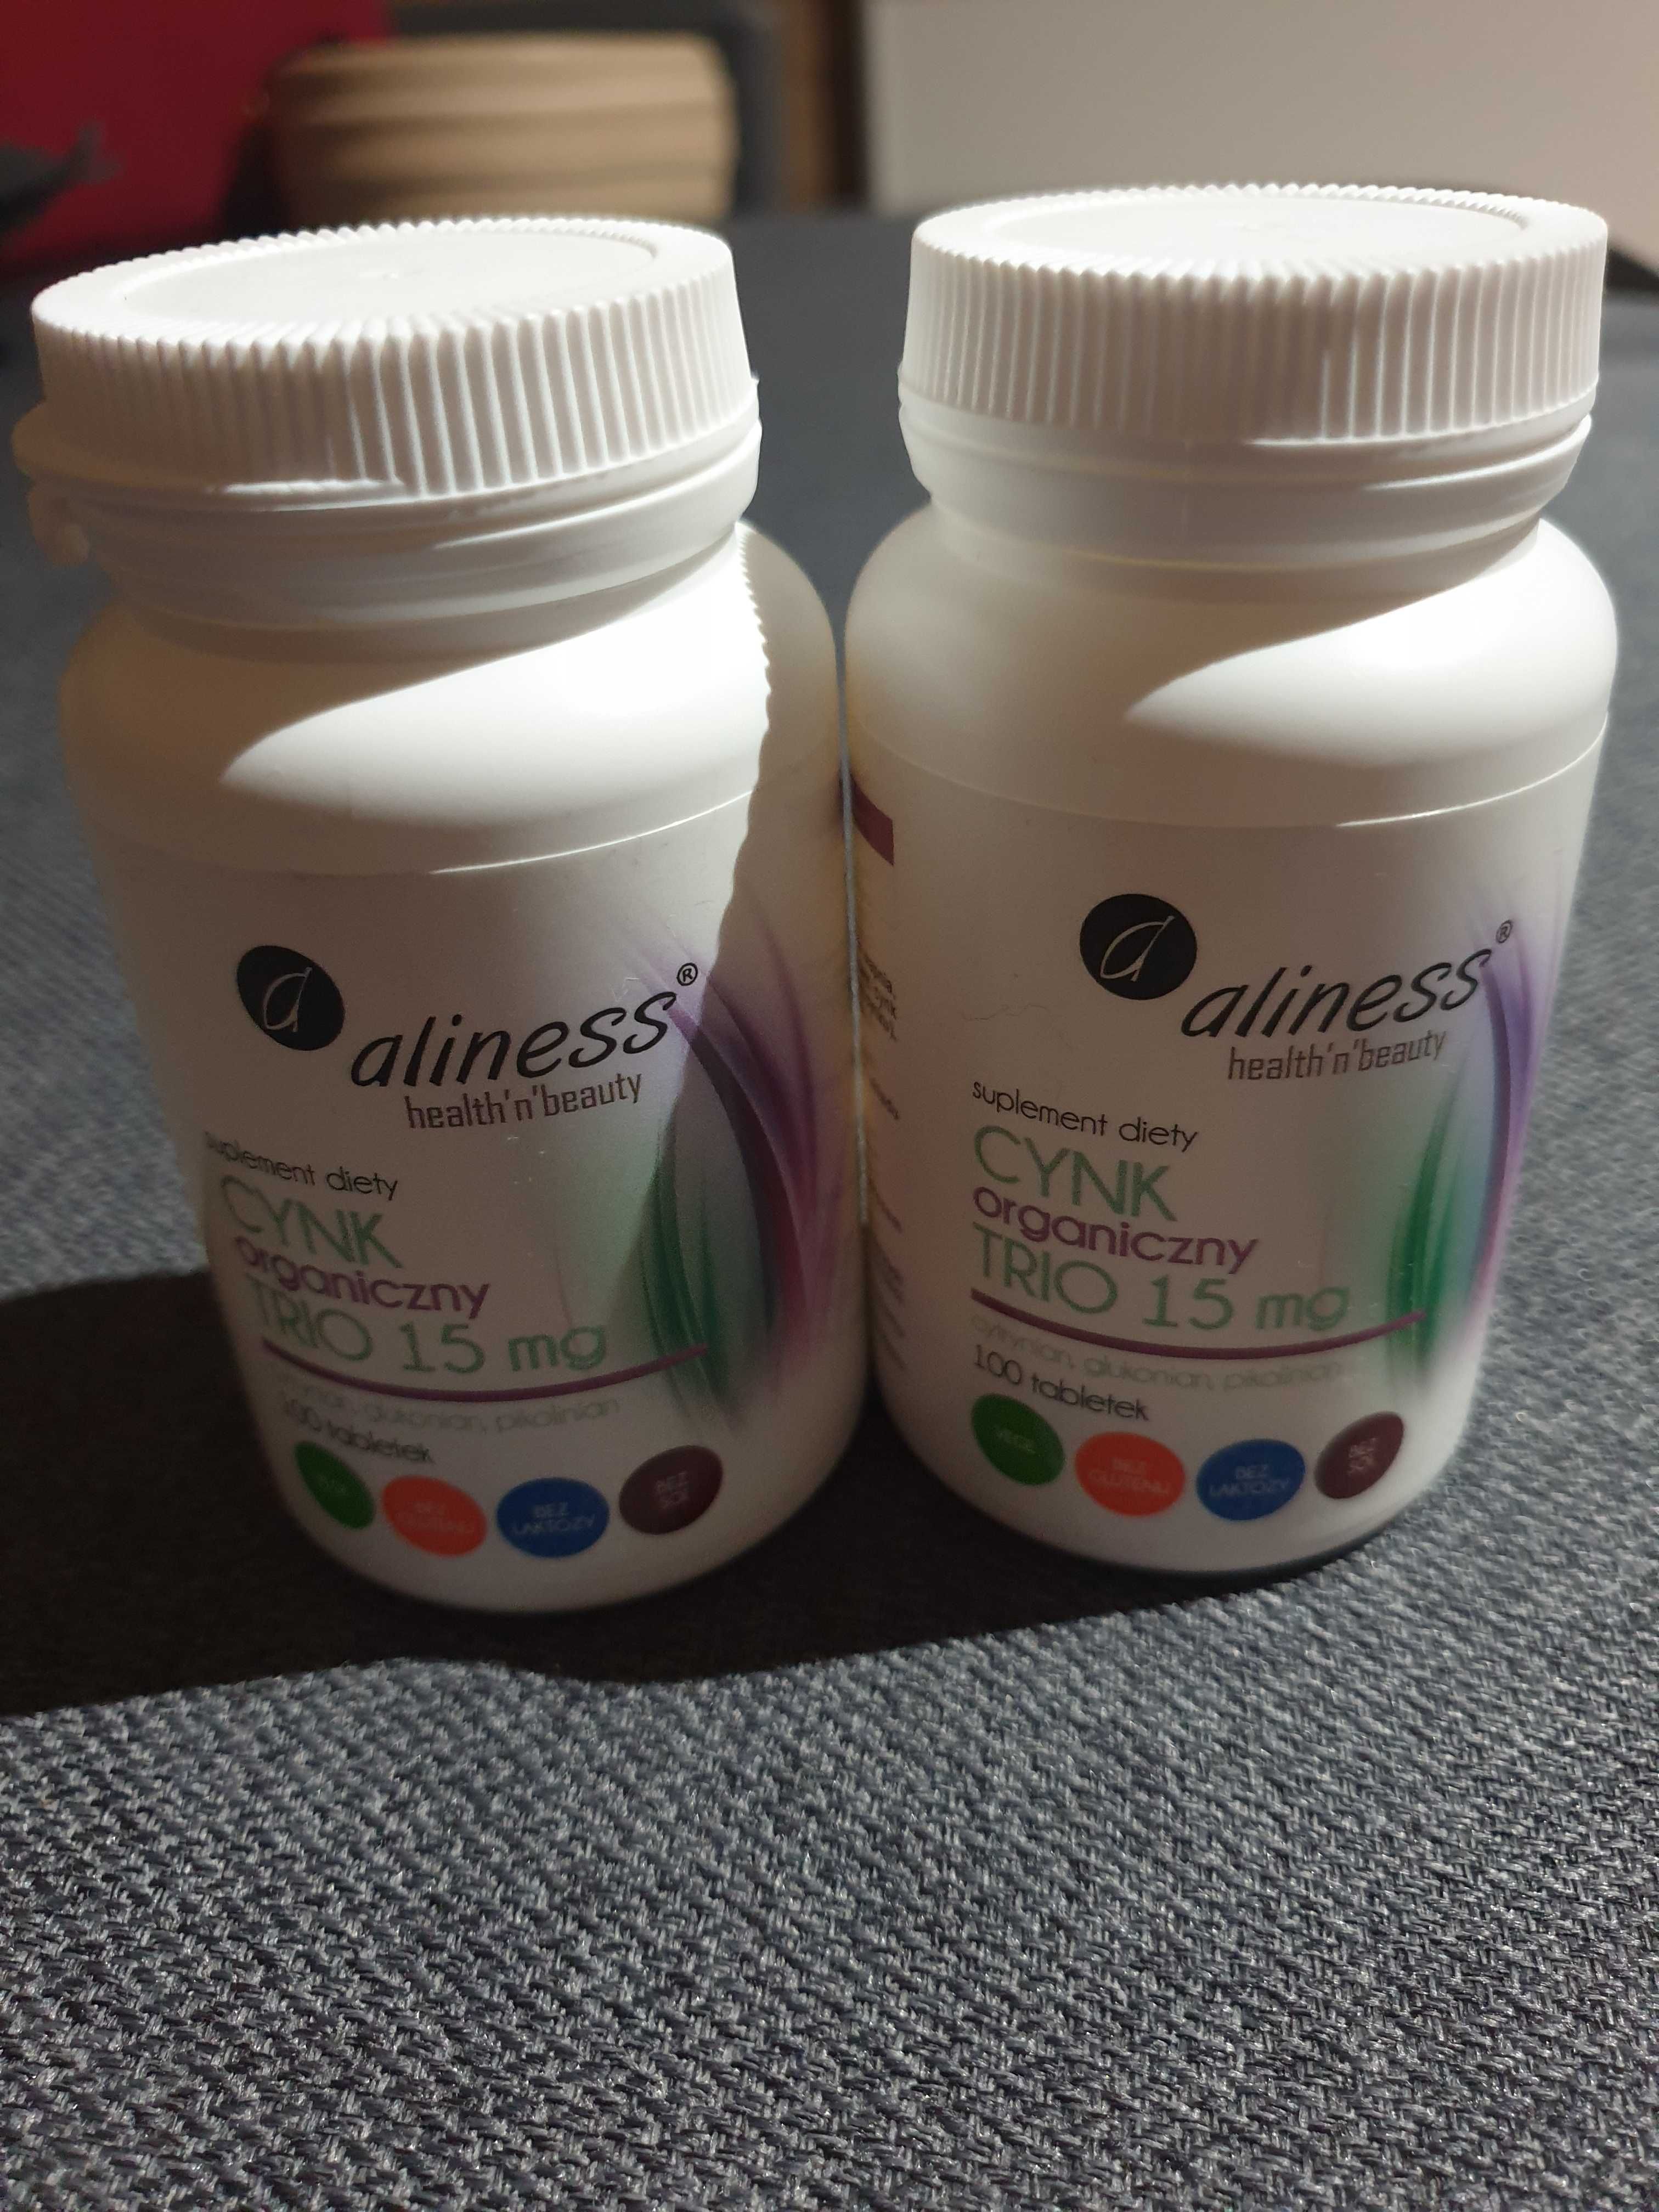 Cynk Organiczny Aliness Trio 15mg 100 tabletek, 2 opakowania